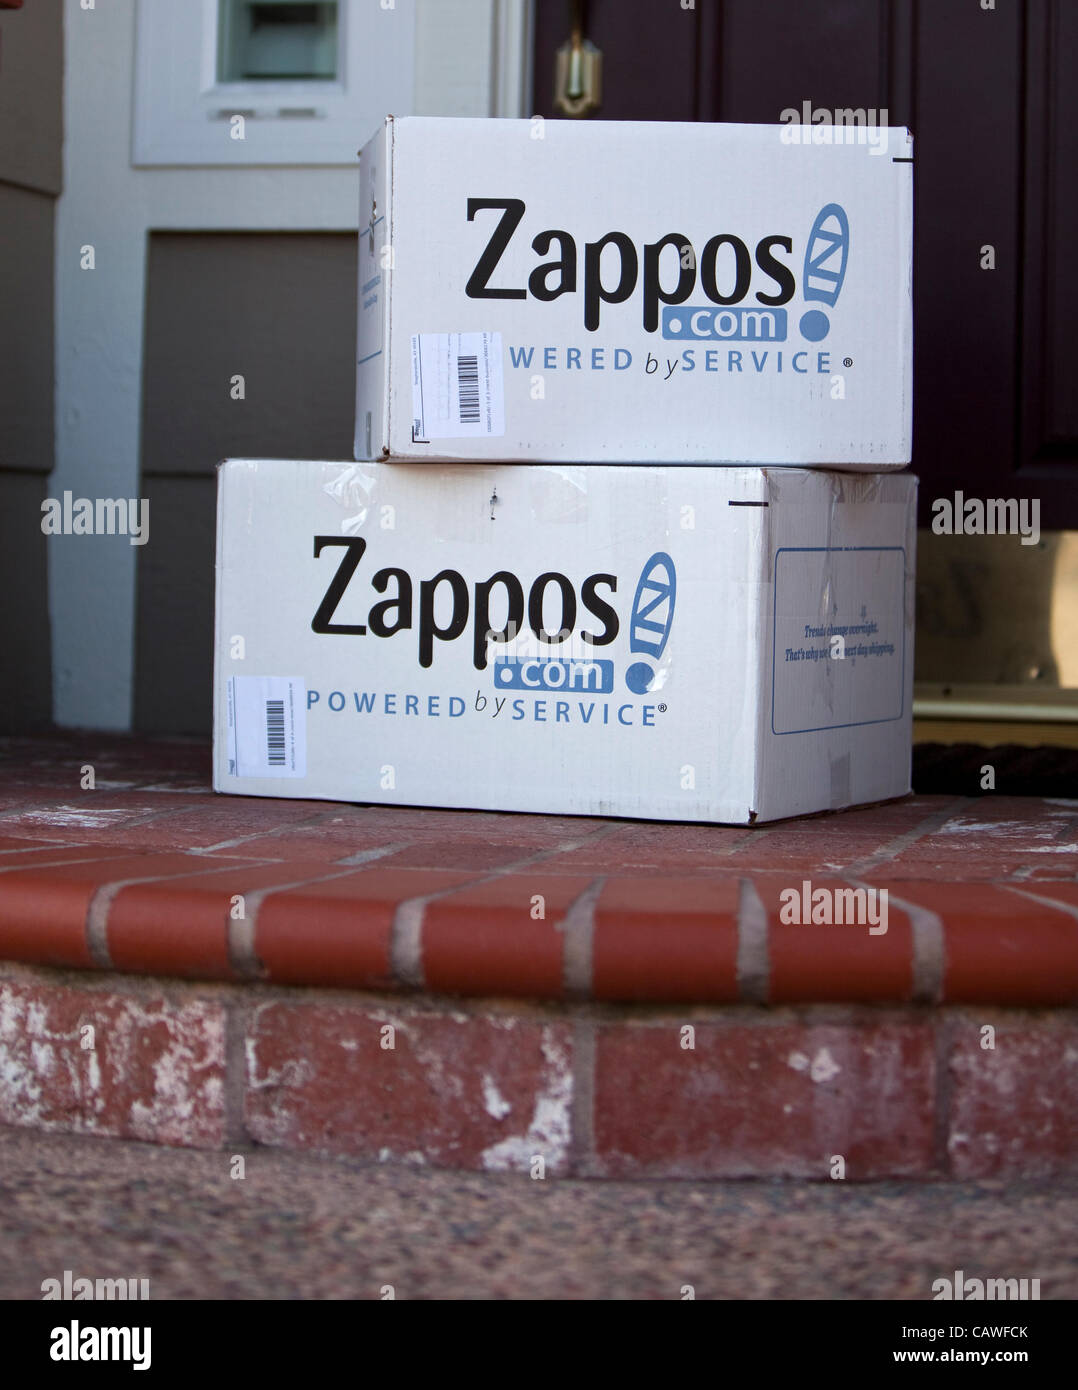 Aprile 22, 2012 - Aliso Viejo, California, Stati Uniti - Bianco Zappos le  scatole di spedizione consegnata a casa in California del Sud. Zappos.com è  un servizio online di scarpe e abbigliamento